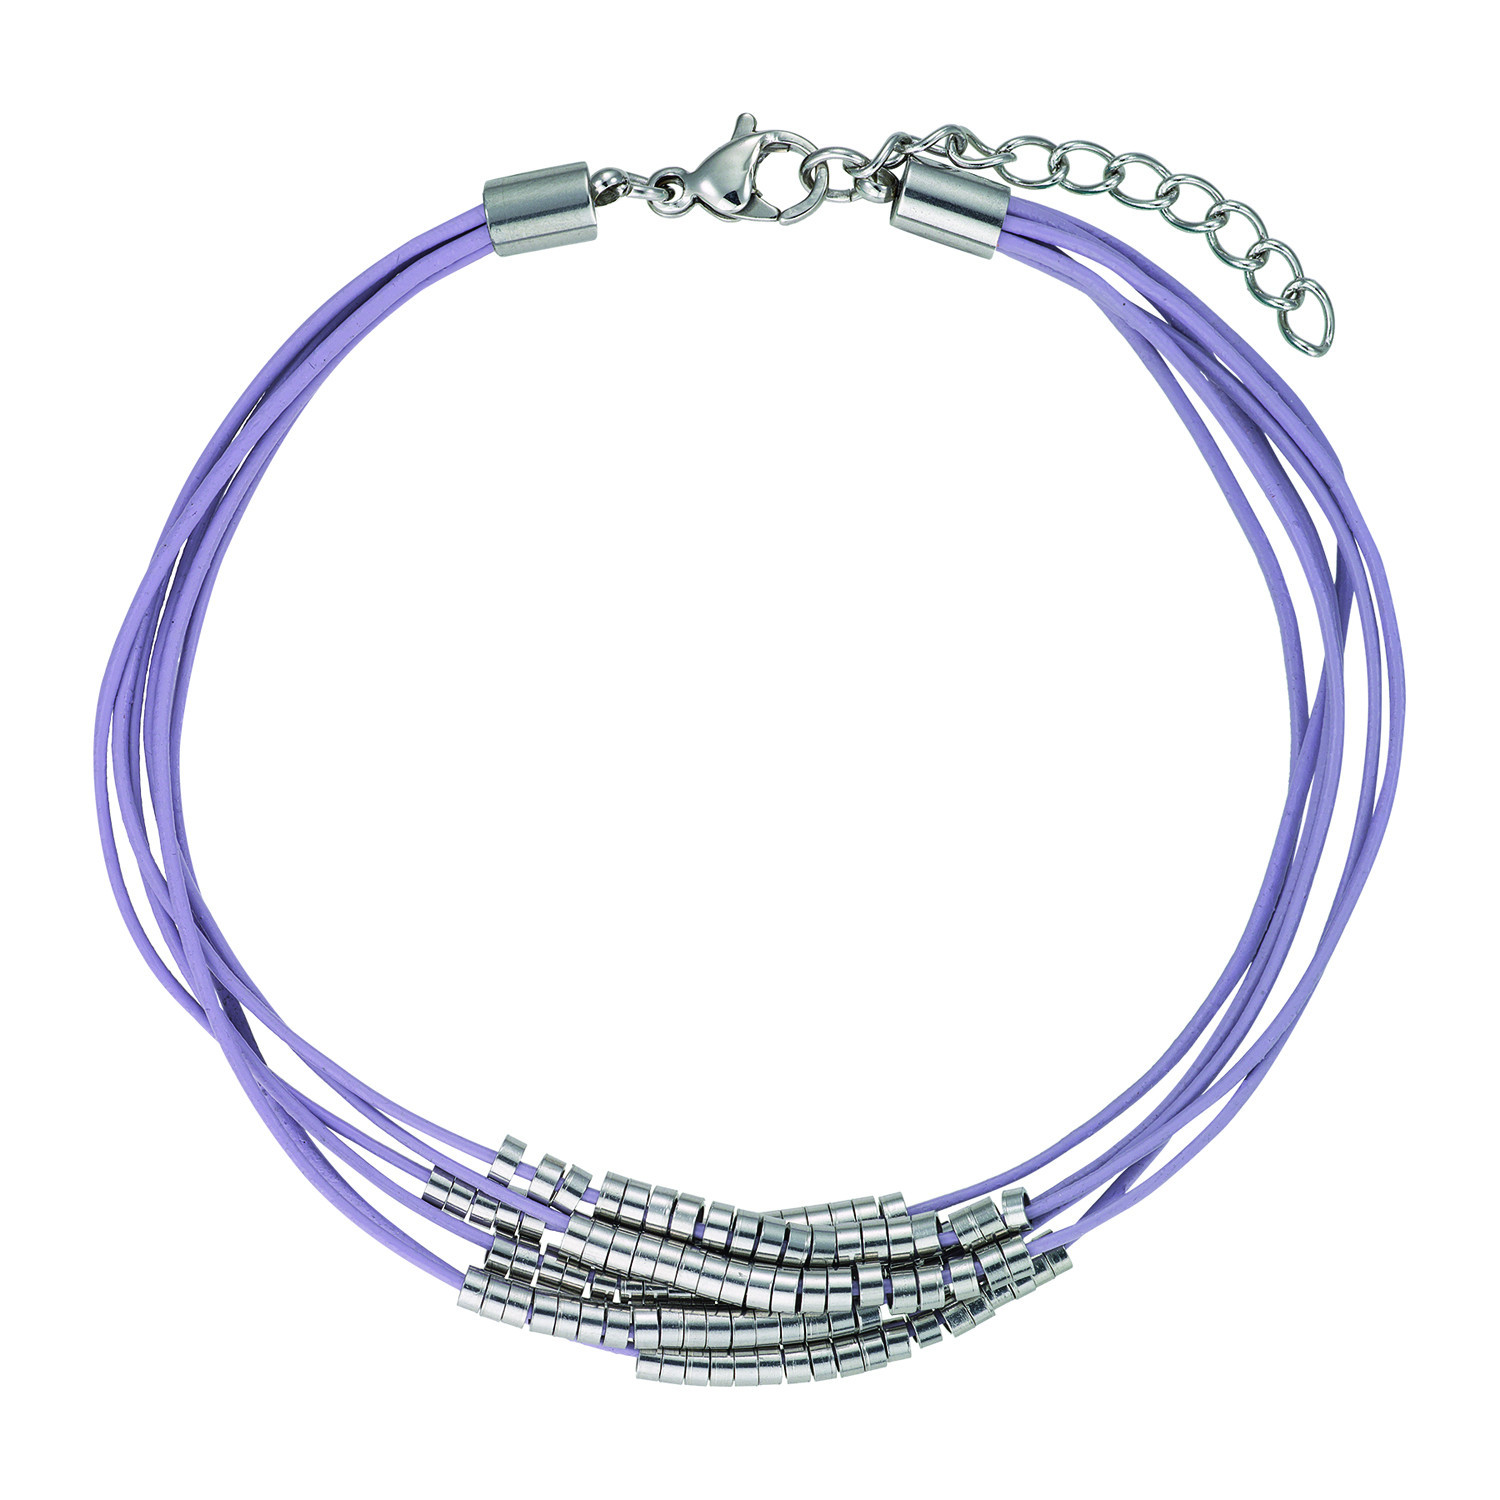 Bracelet Go Mademoiselle multi-rangs cuir violet